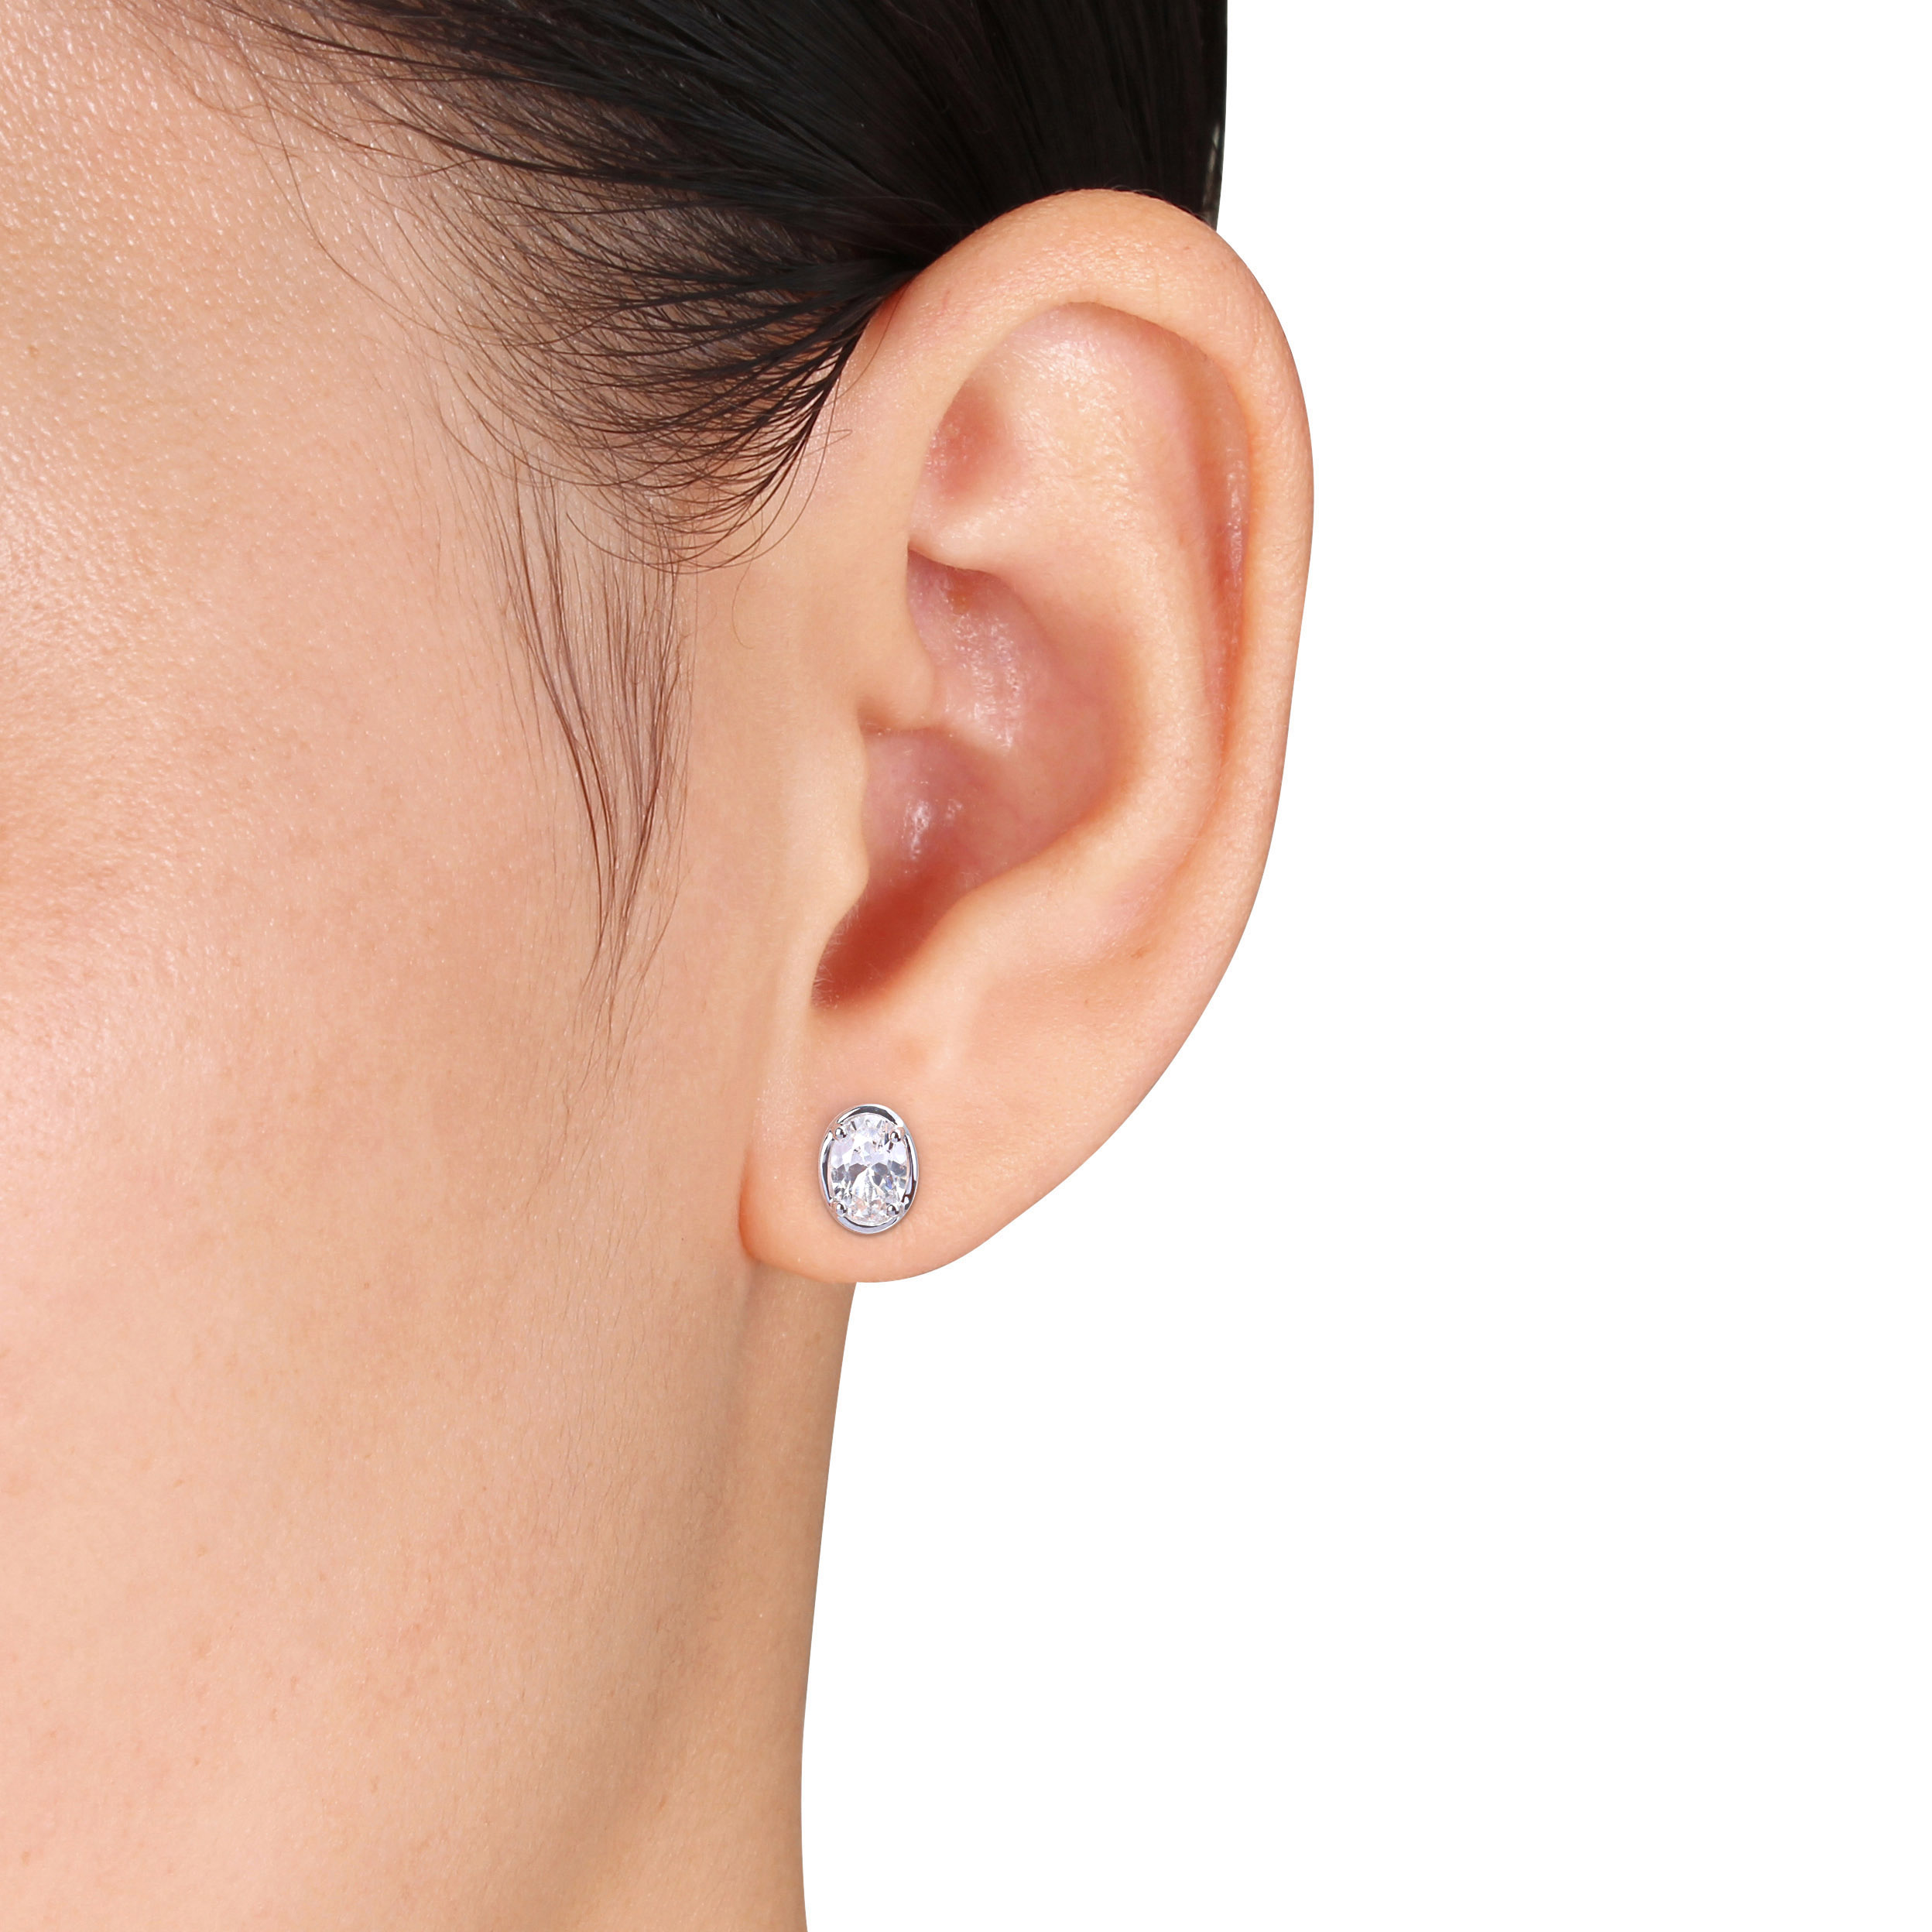 2 1/2 CT TGW Created White Sapphire Bezel Style Oval Stud Earrings in Sterling Silver